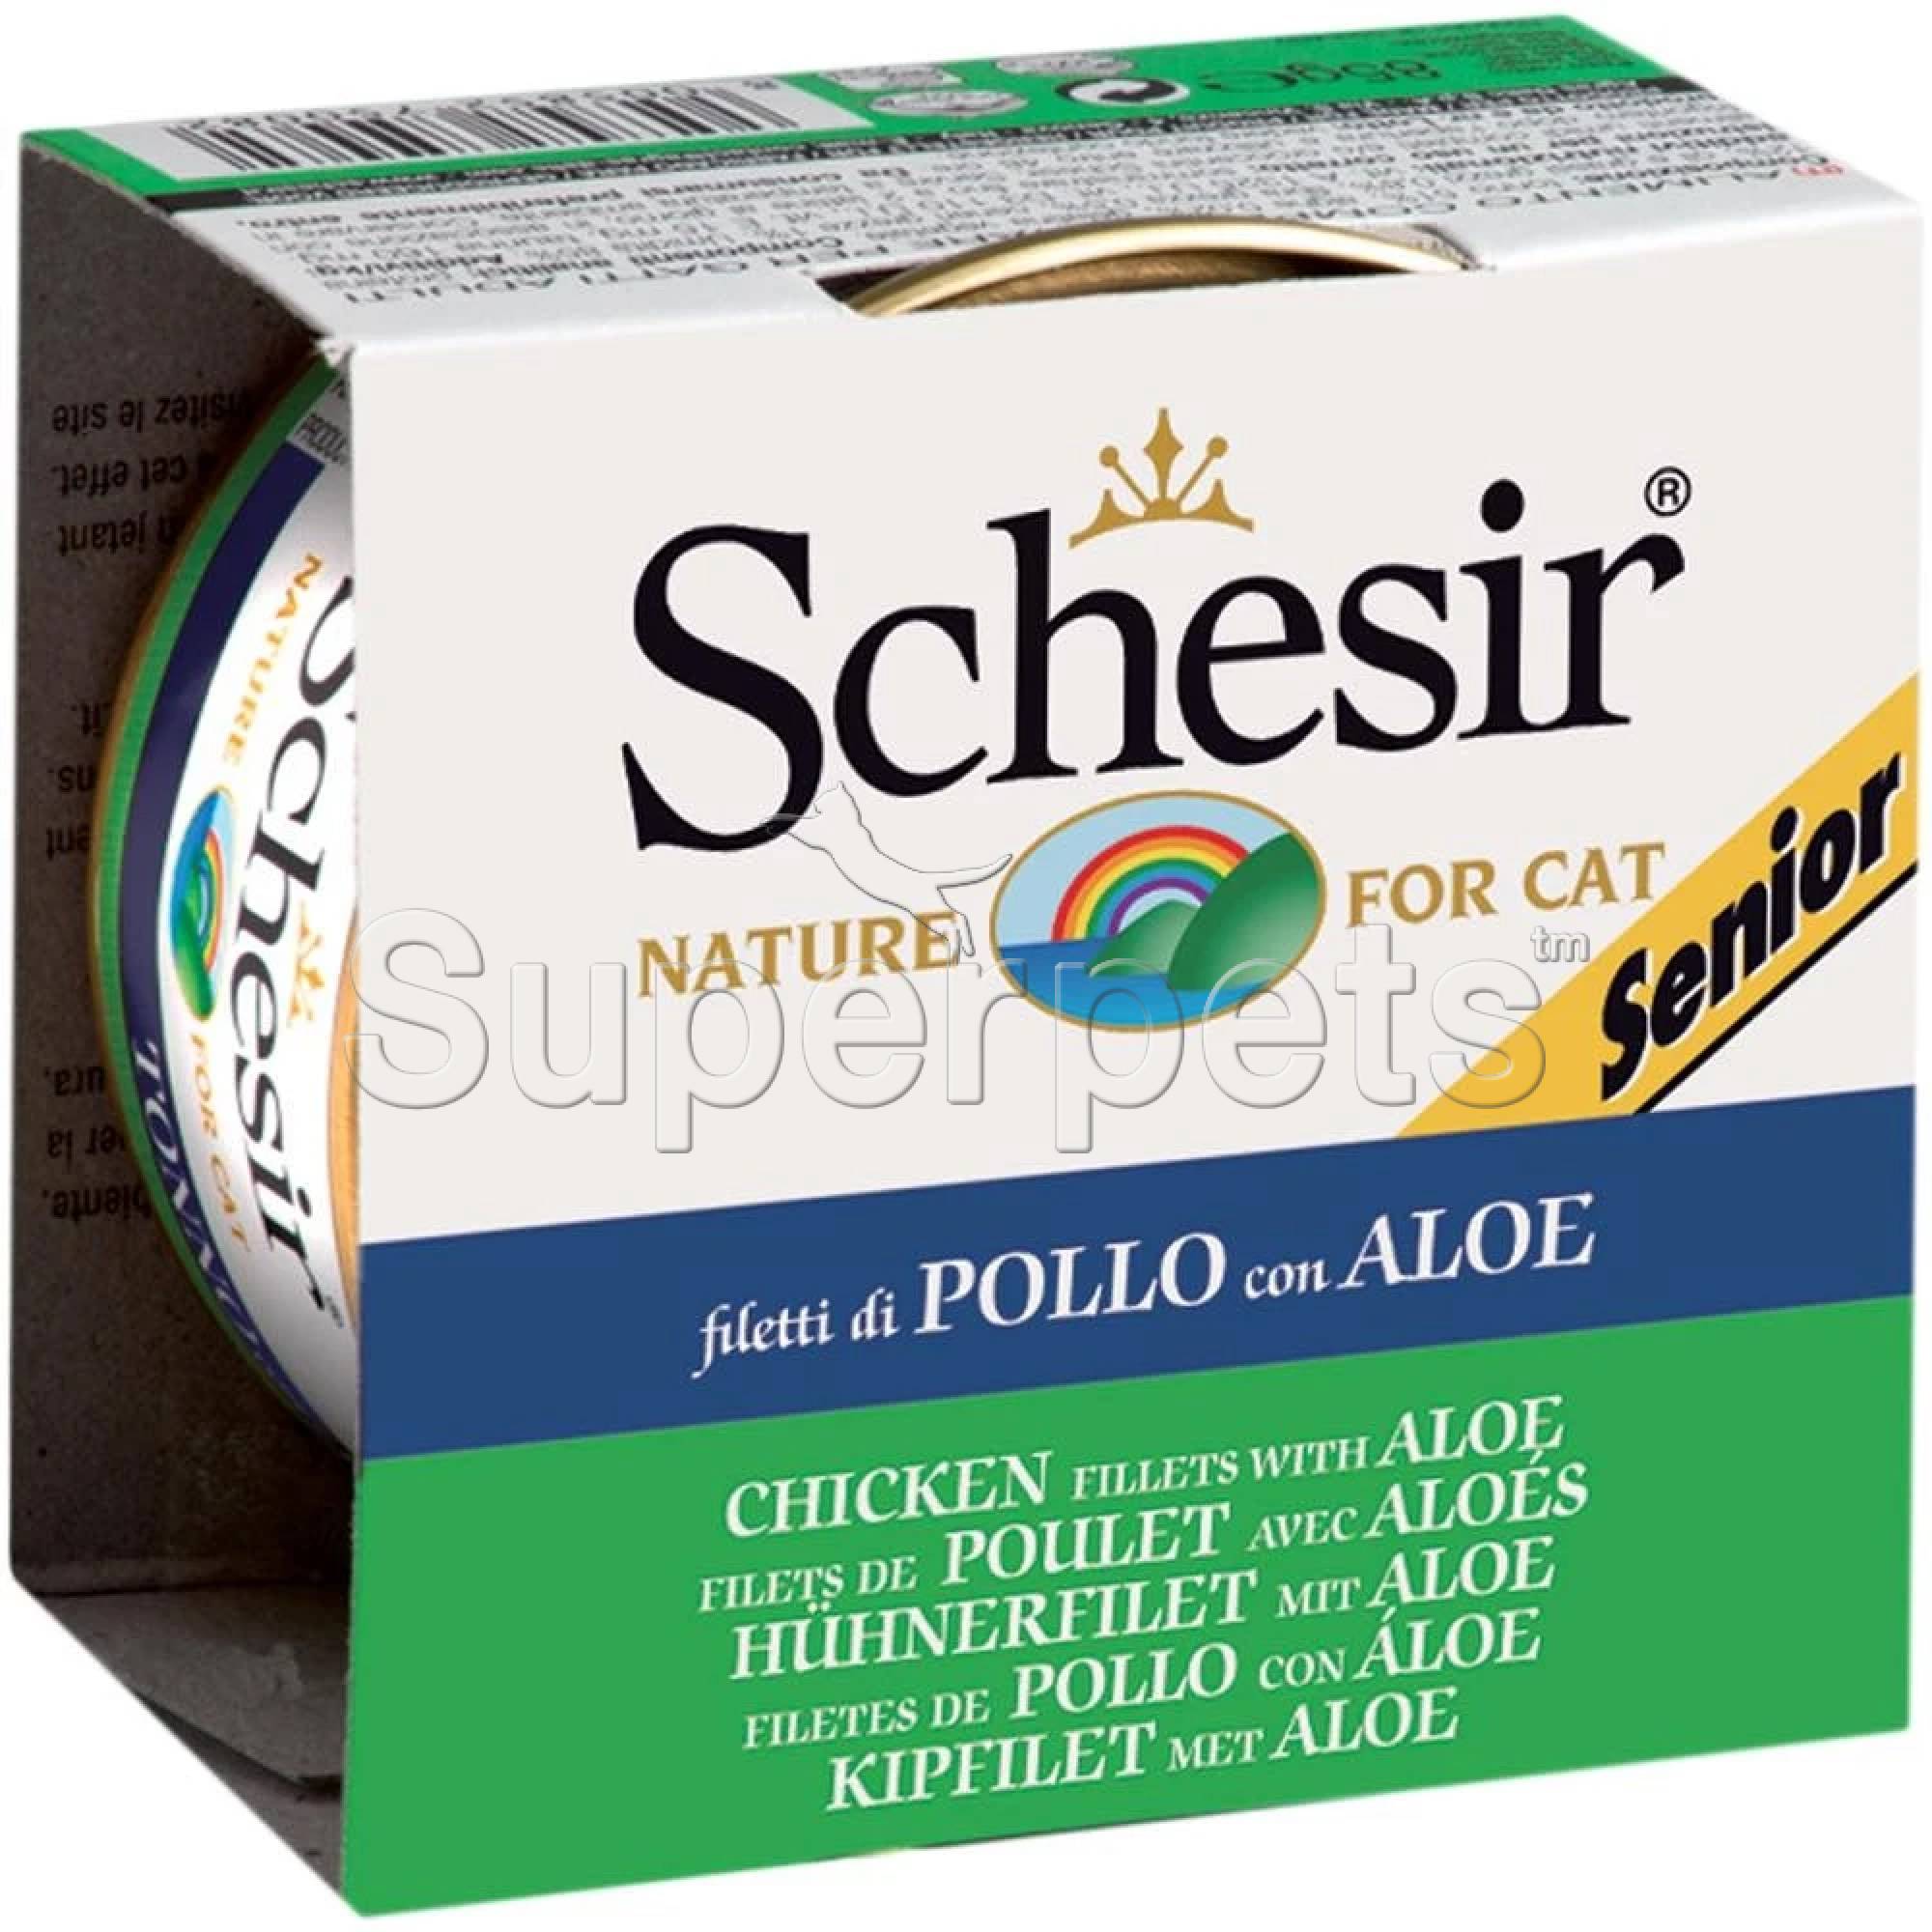 Schesir Cat Senior - Chicken Fillets with Aloe 85g